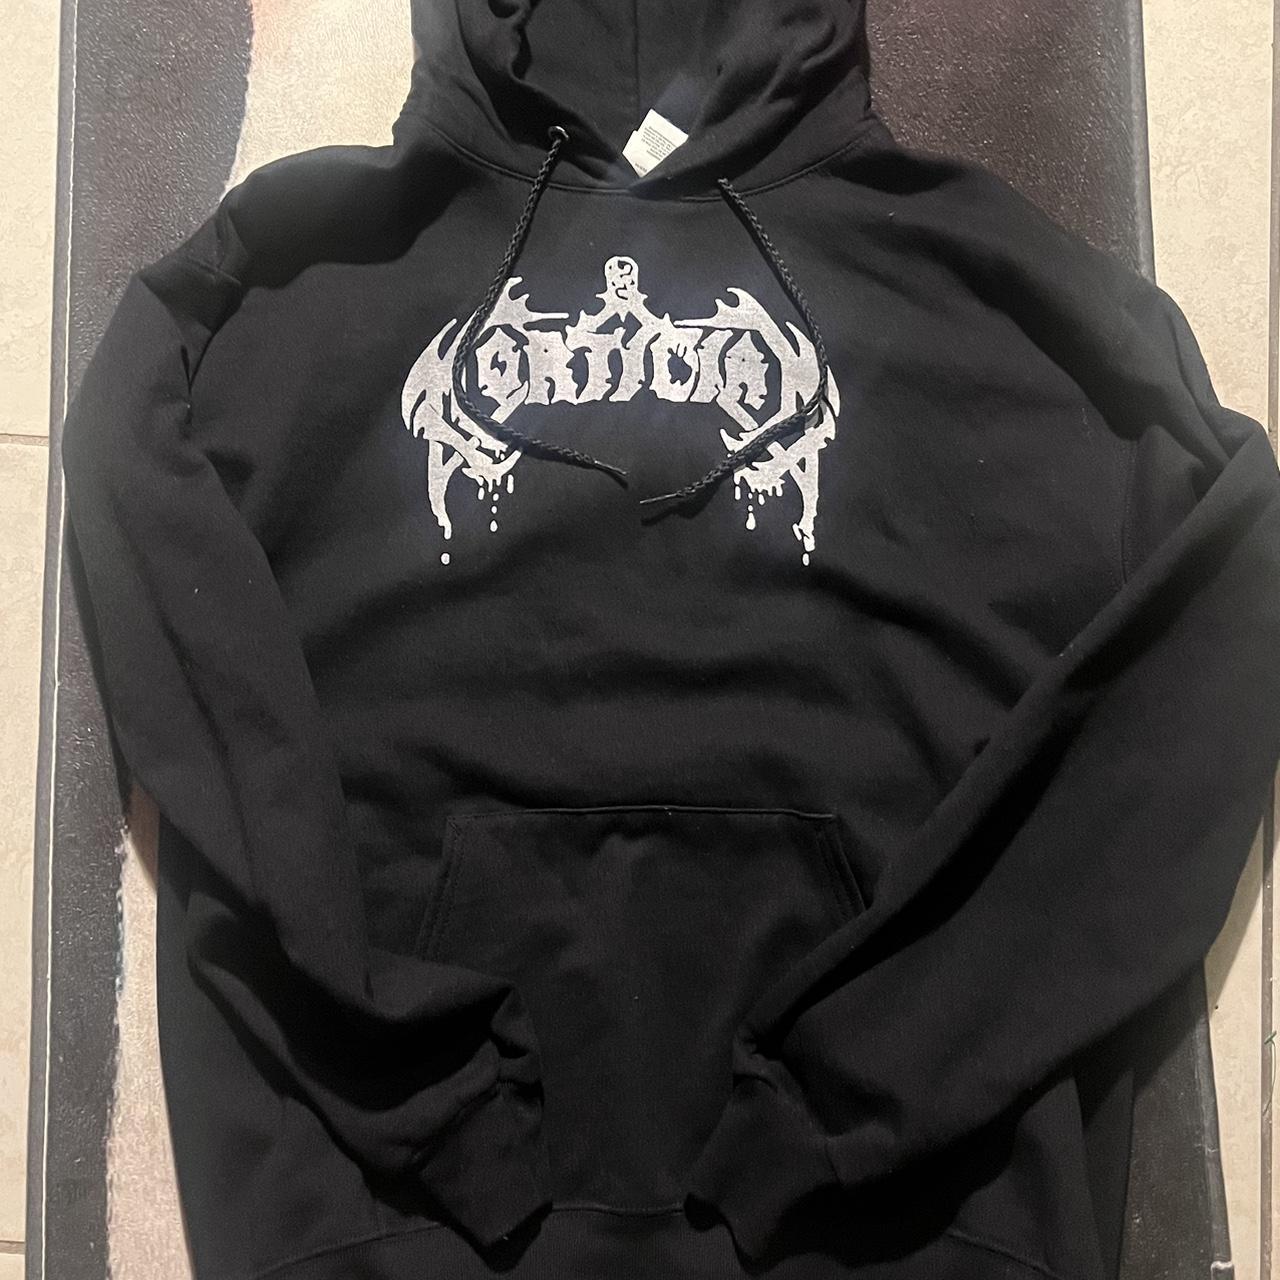 Sick Mortician logo death metal hoodie Awesome... - Depop